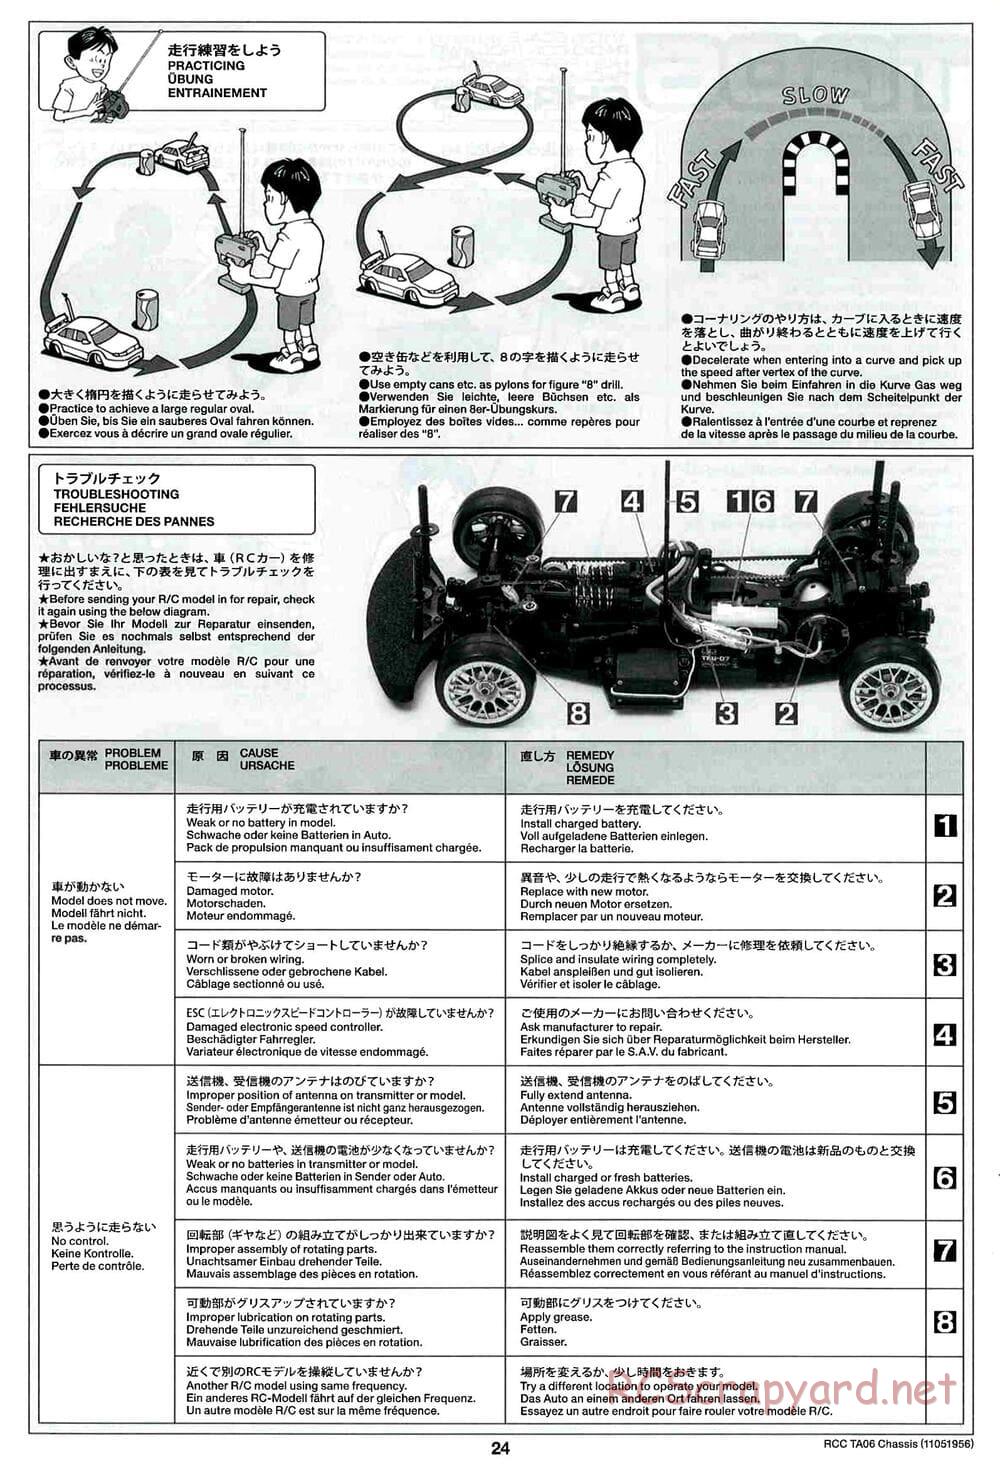 Tamiya - TA06 Chassis - Manual - Page 24